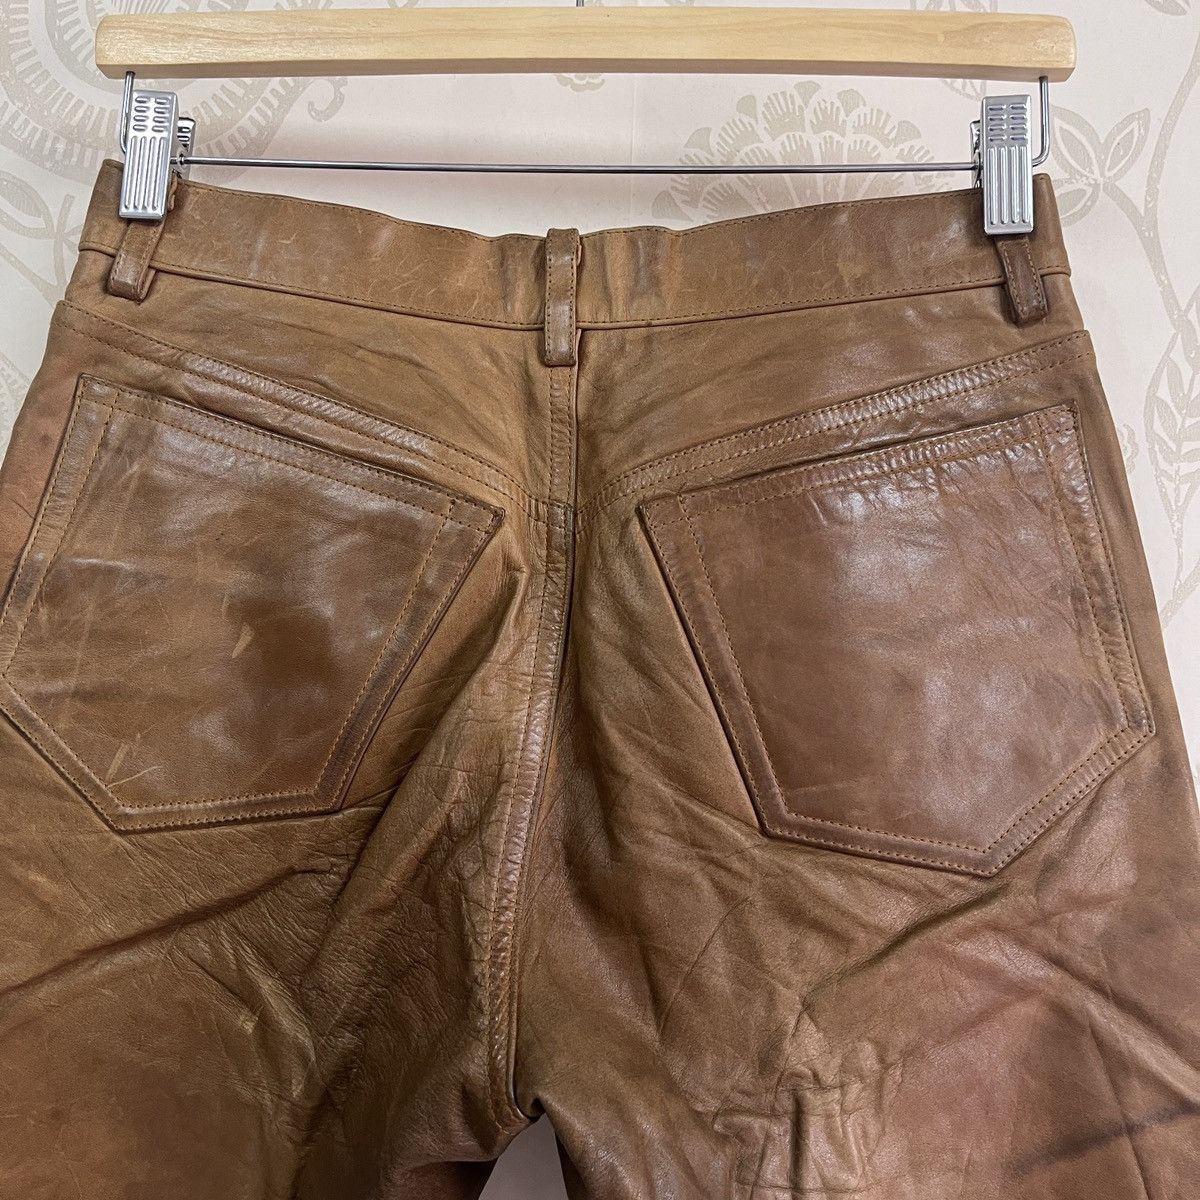 Genuine Leather - Japan 5351 Pour Les Homme Leather Pants - 21